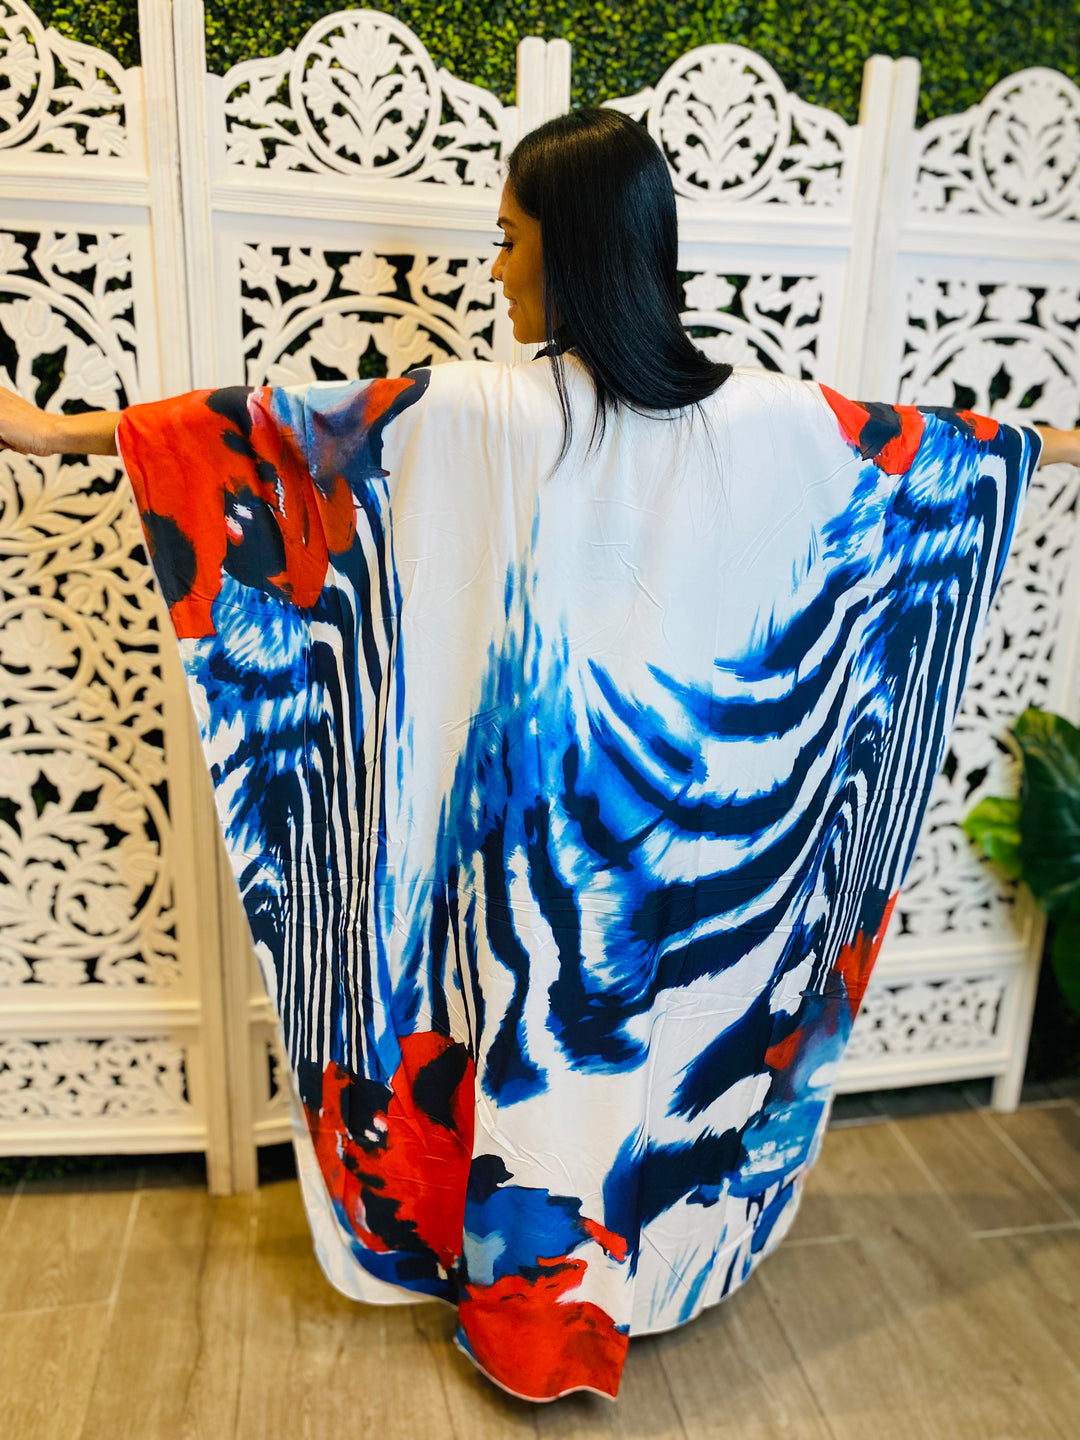 IN THE MIDDLE Multi Print Maxi Length Kimono-Kimono-Ali-Malandra Boutique, Women's Fashion Boutique Located in Las Vegas, NV